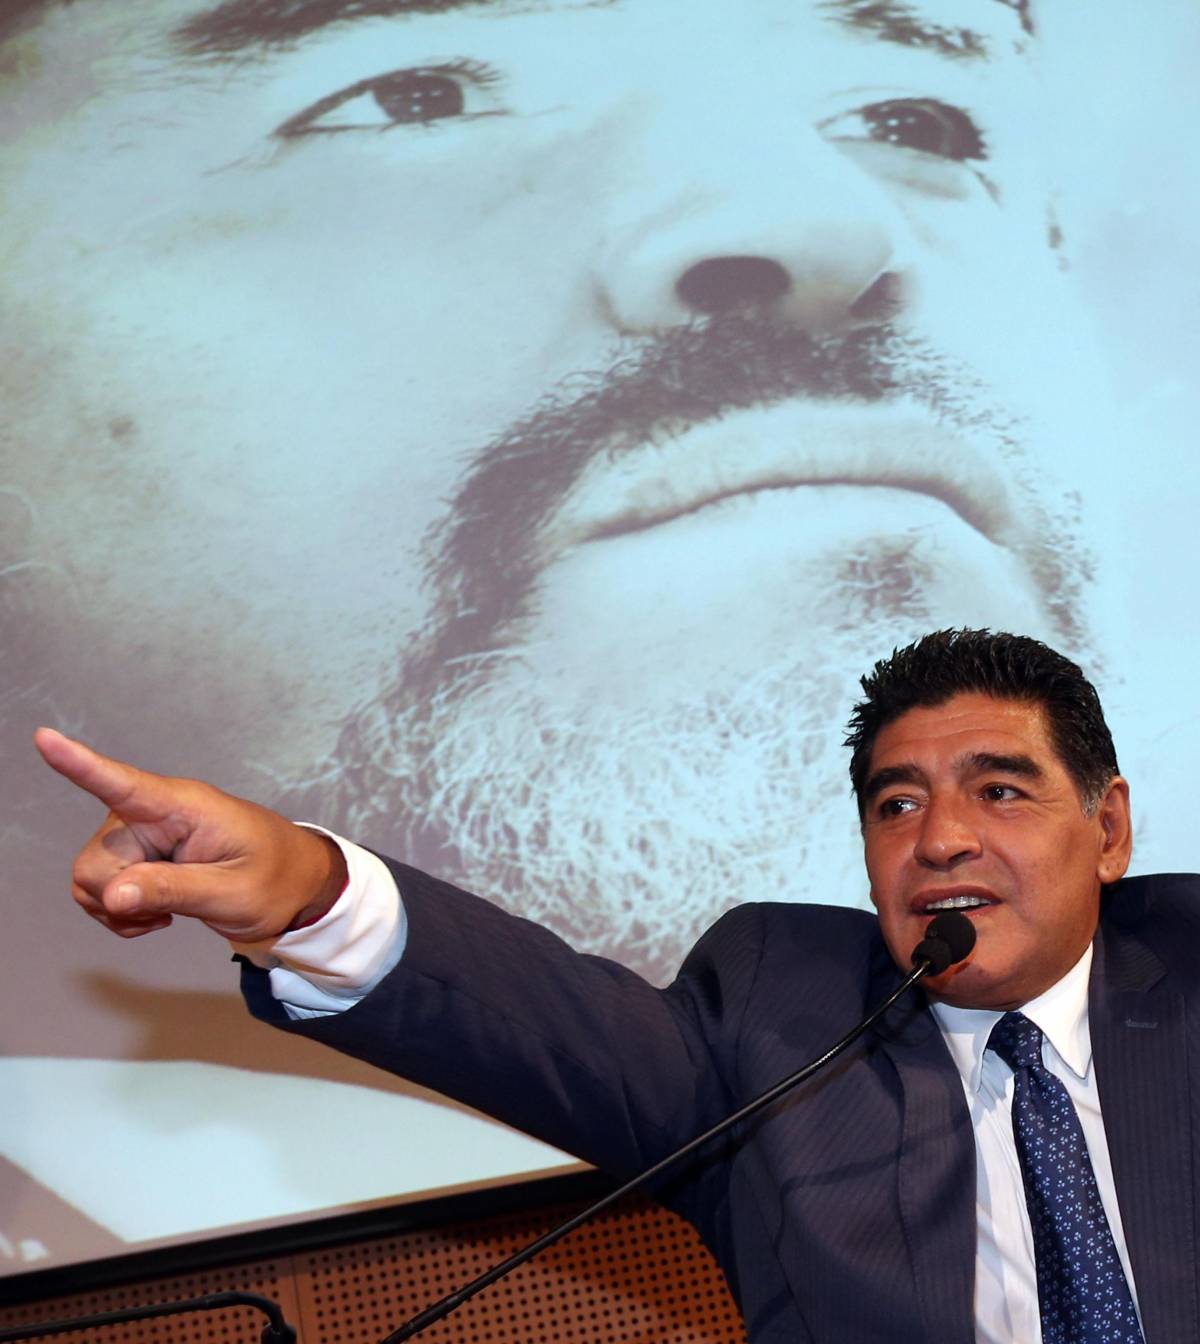 Maradona-Napoli: il 5 luglio otterrà la cittadinanza